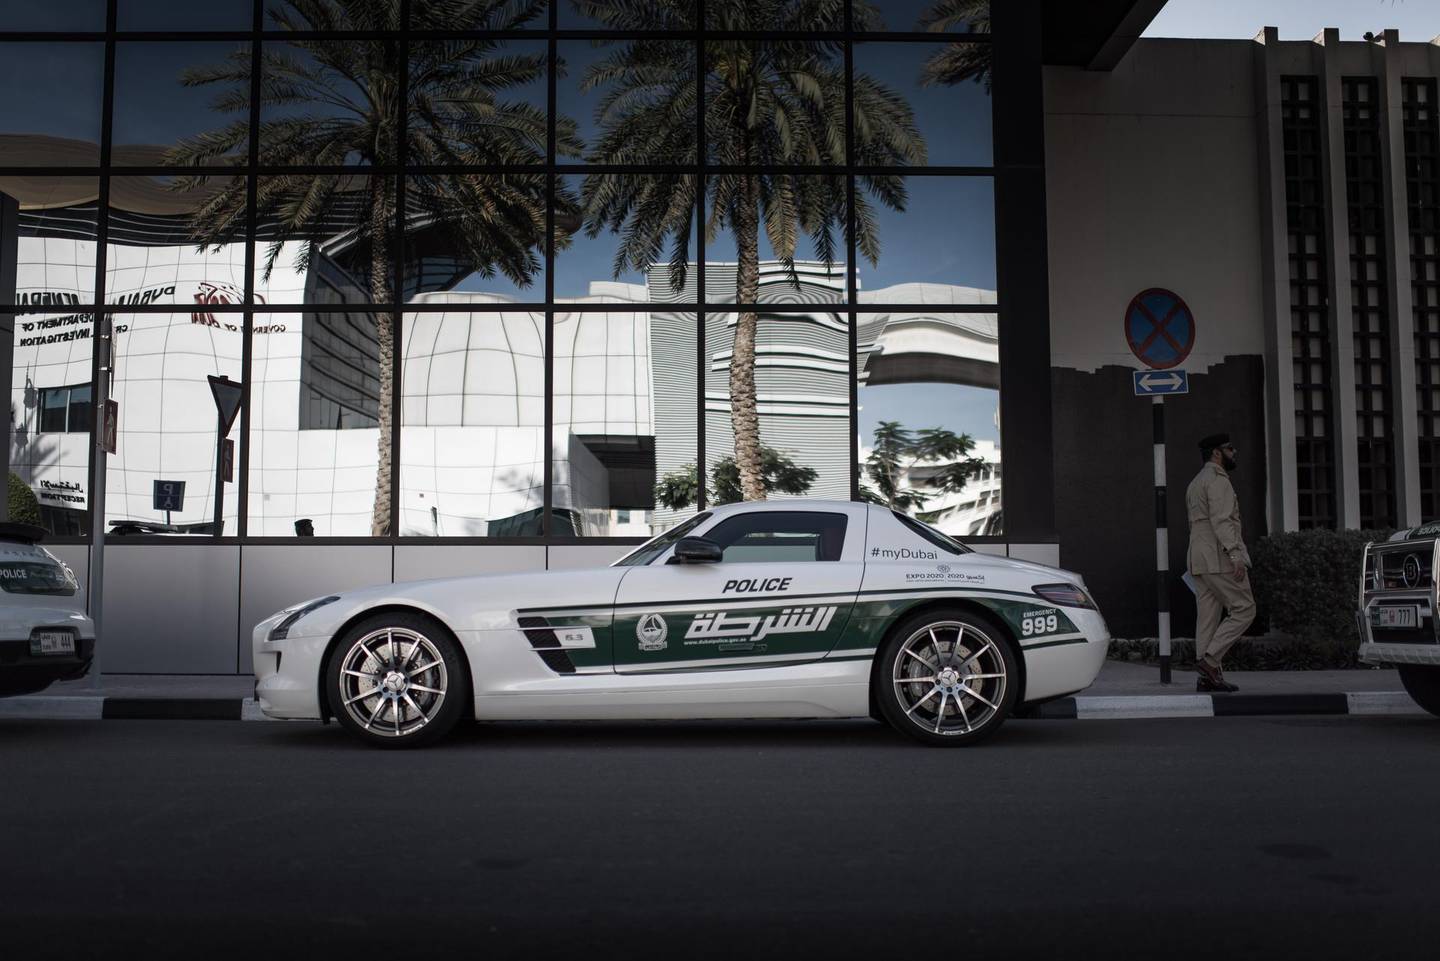 Dubai police cars